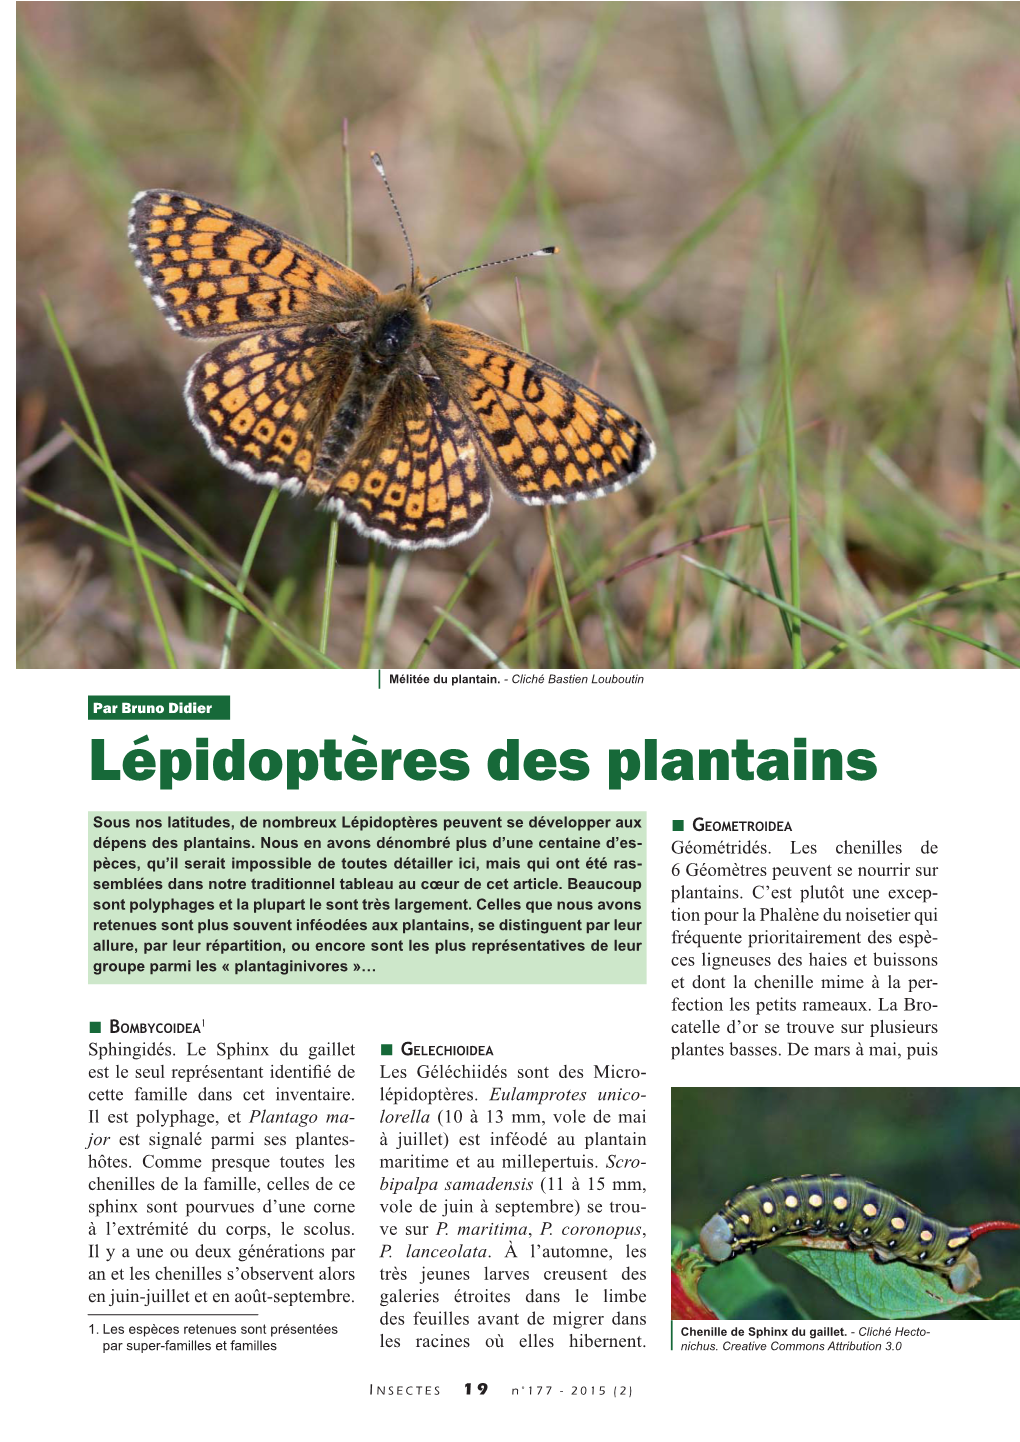 Lépidoptères Des Plantains / Insectes N°